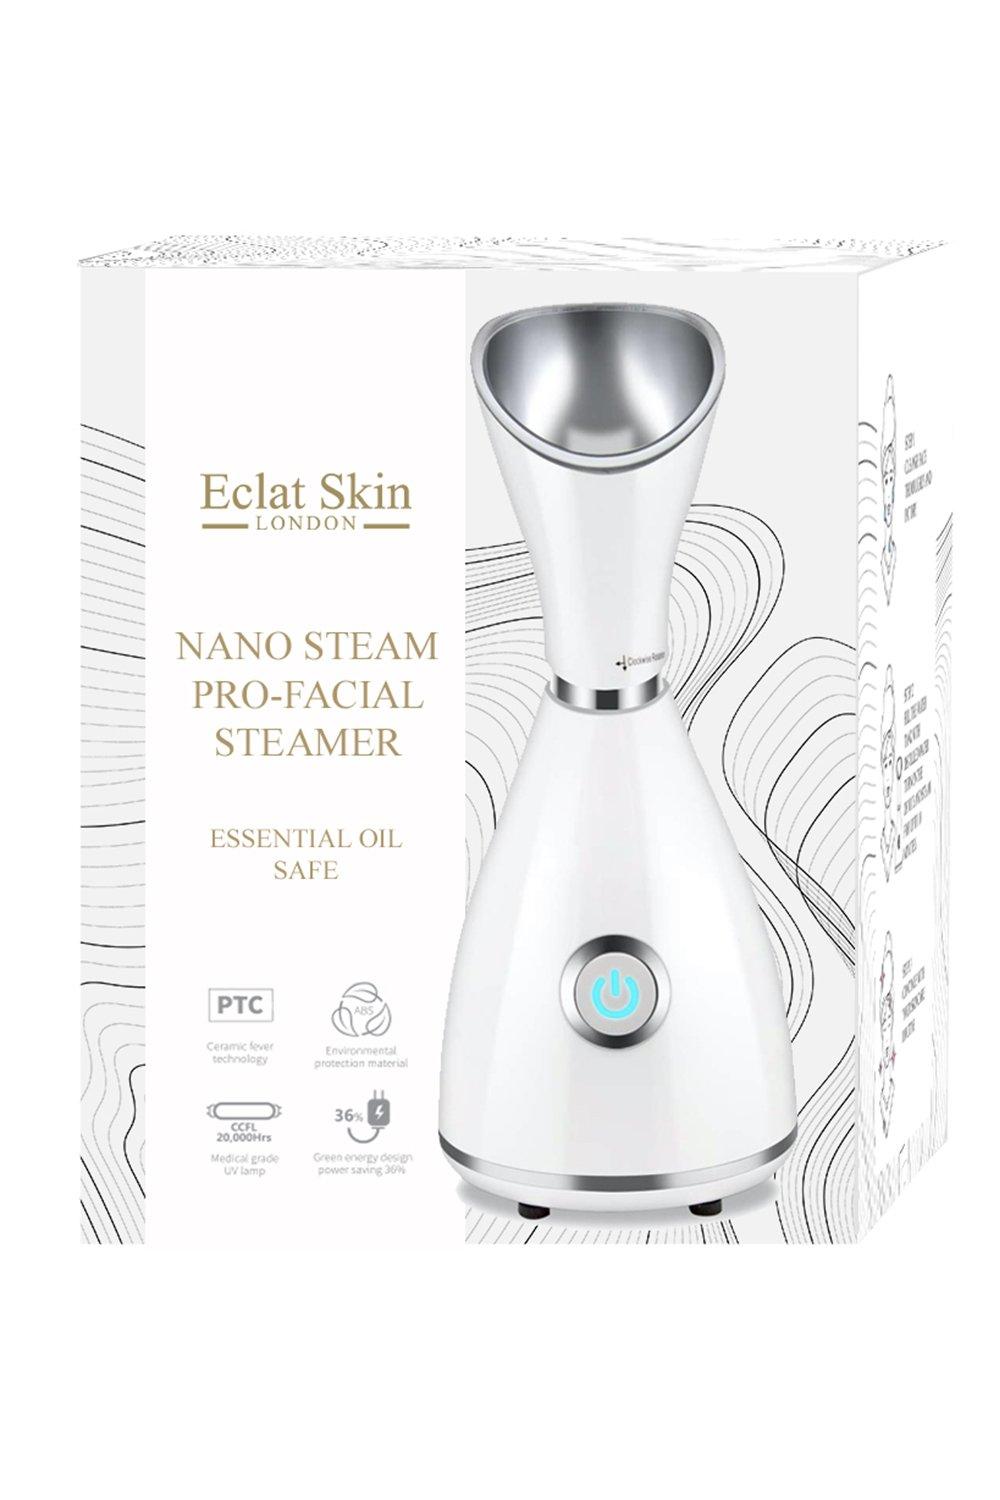 Eclat Skin London Women's Nano Steam Pro-Facial Steamer|white